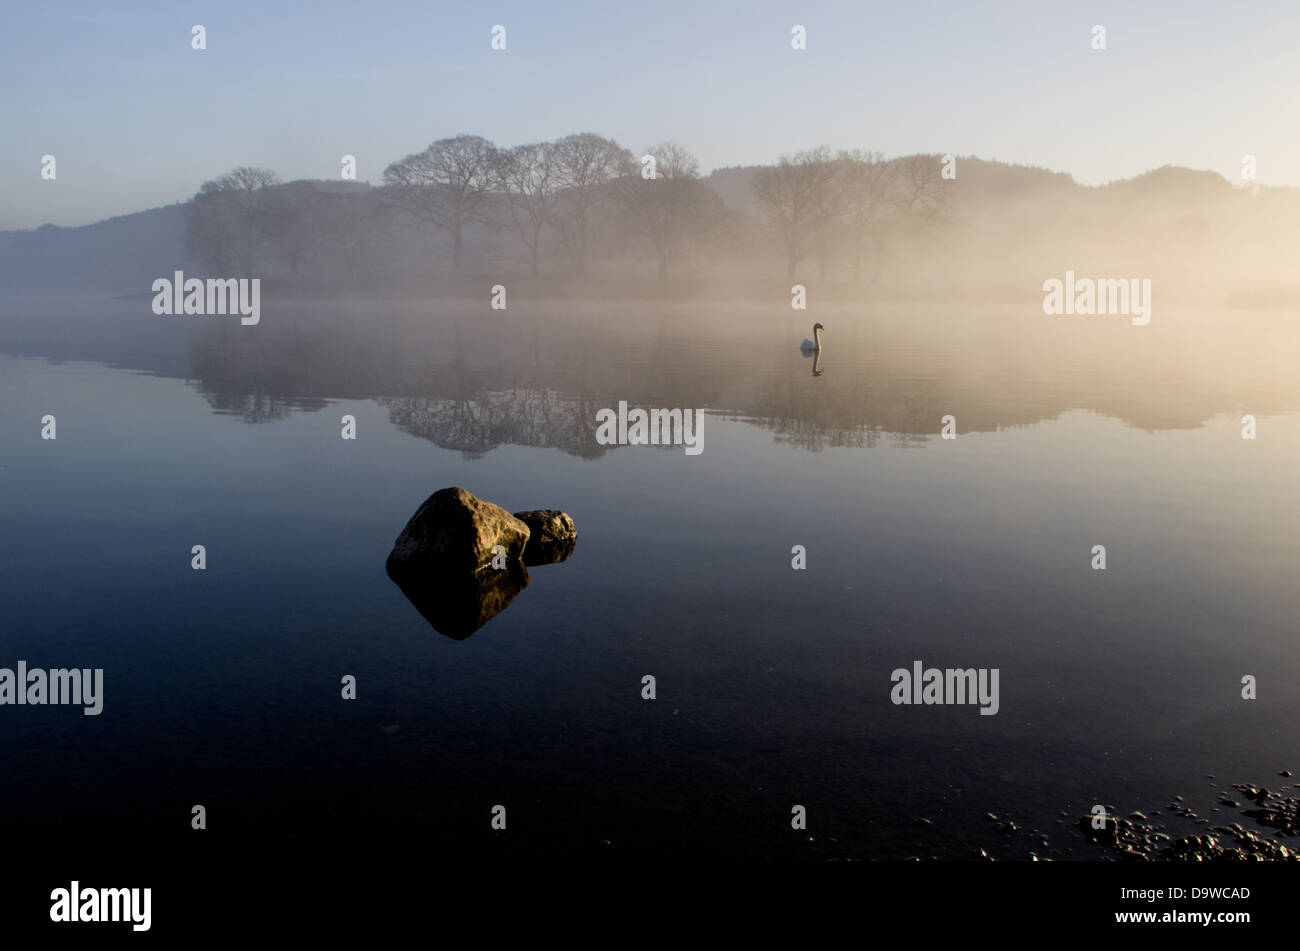 Ein ruhiger Morgen an einem See mit einem fernen Ufer im Nebel bedeckt, ein Felsen im Vordergrund und ein Schwan aus dem Nebel kommen. Stockfoto